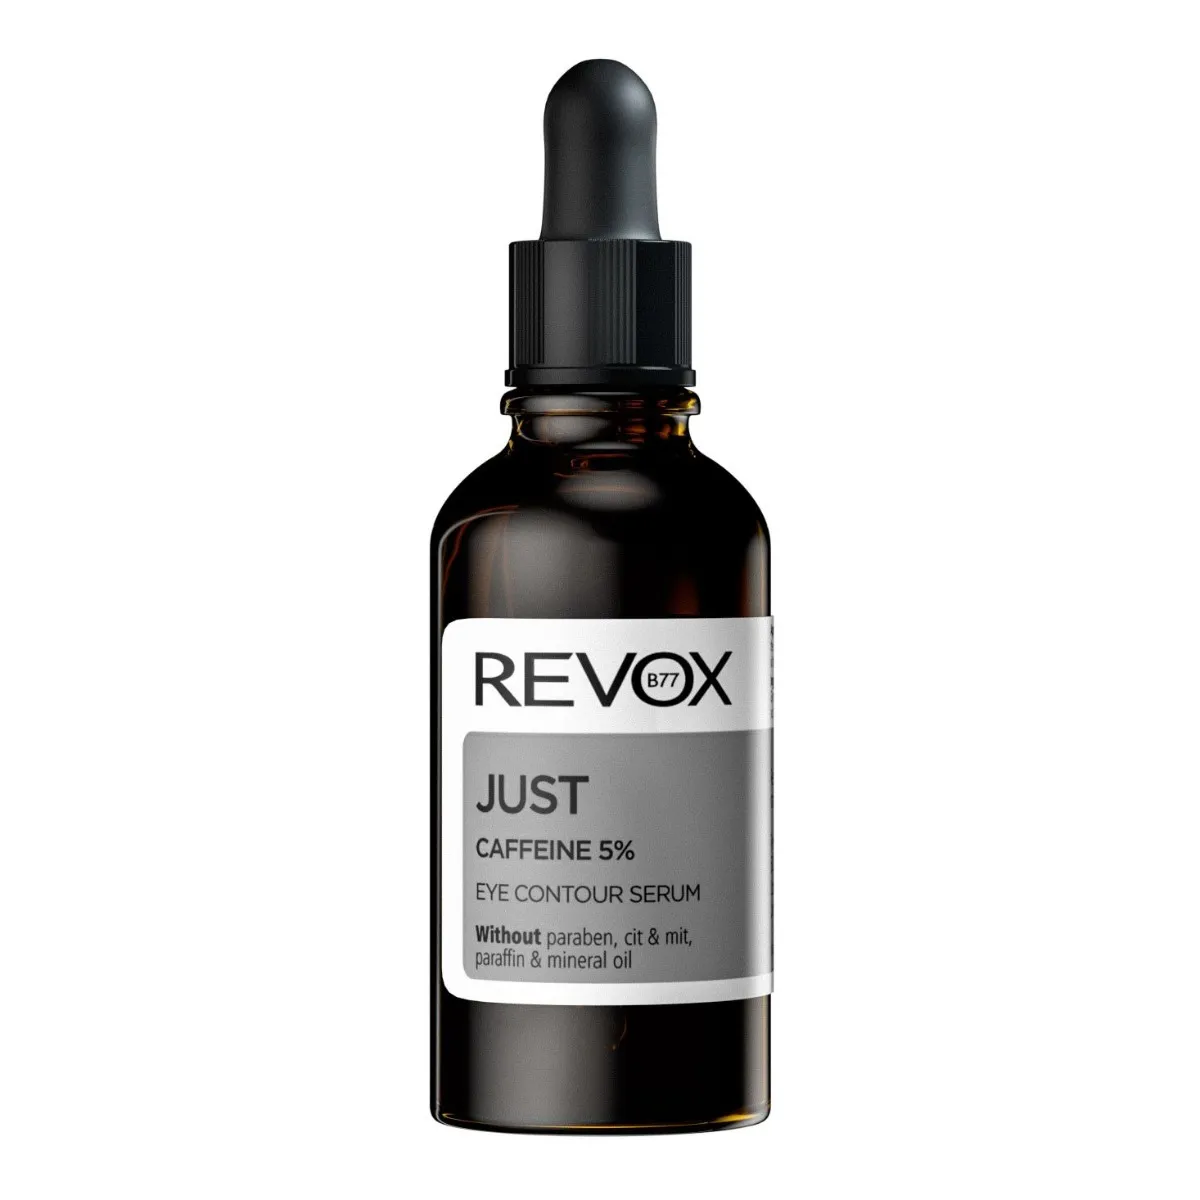 Revox Just Under Eye Serum sérum 30 ml